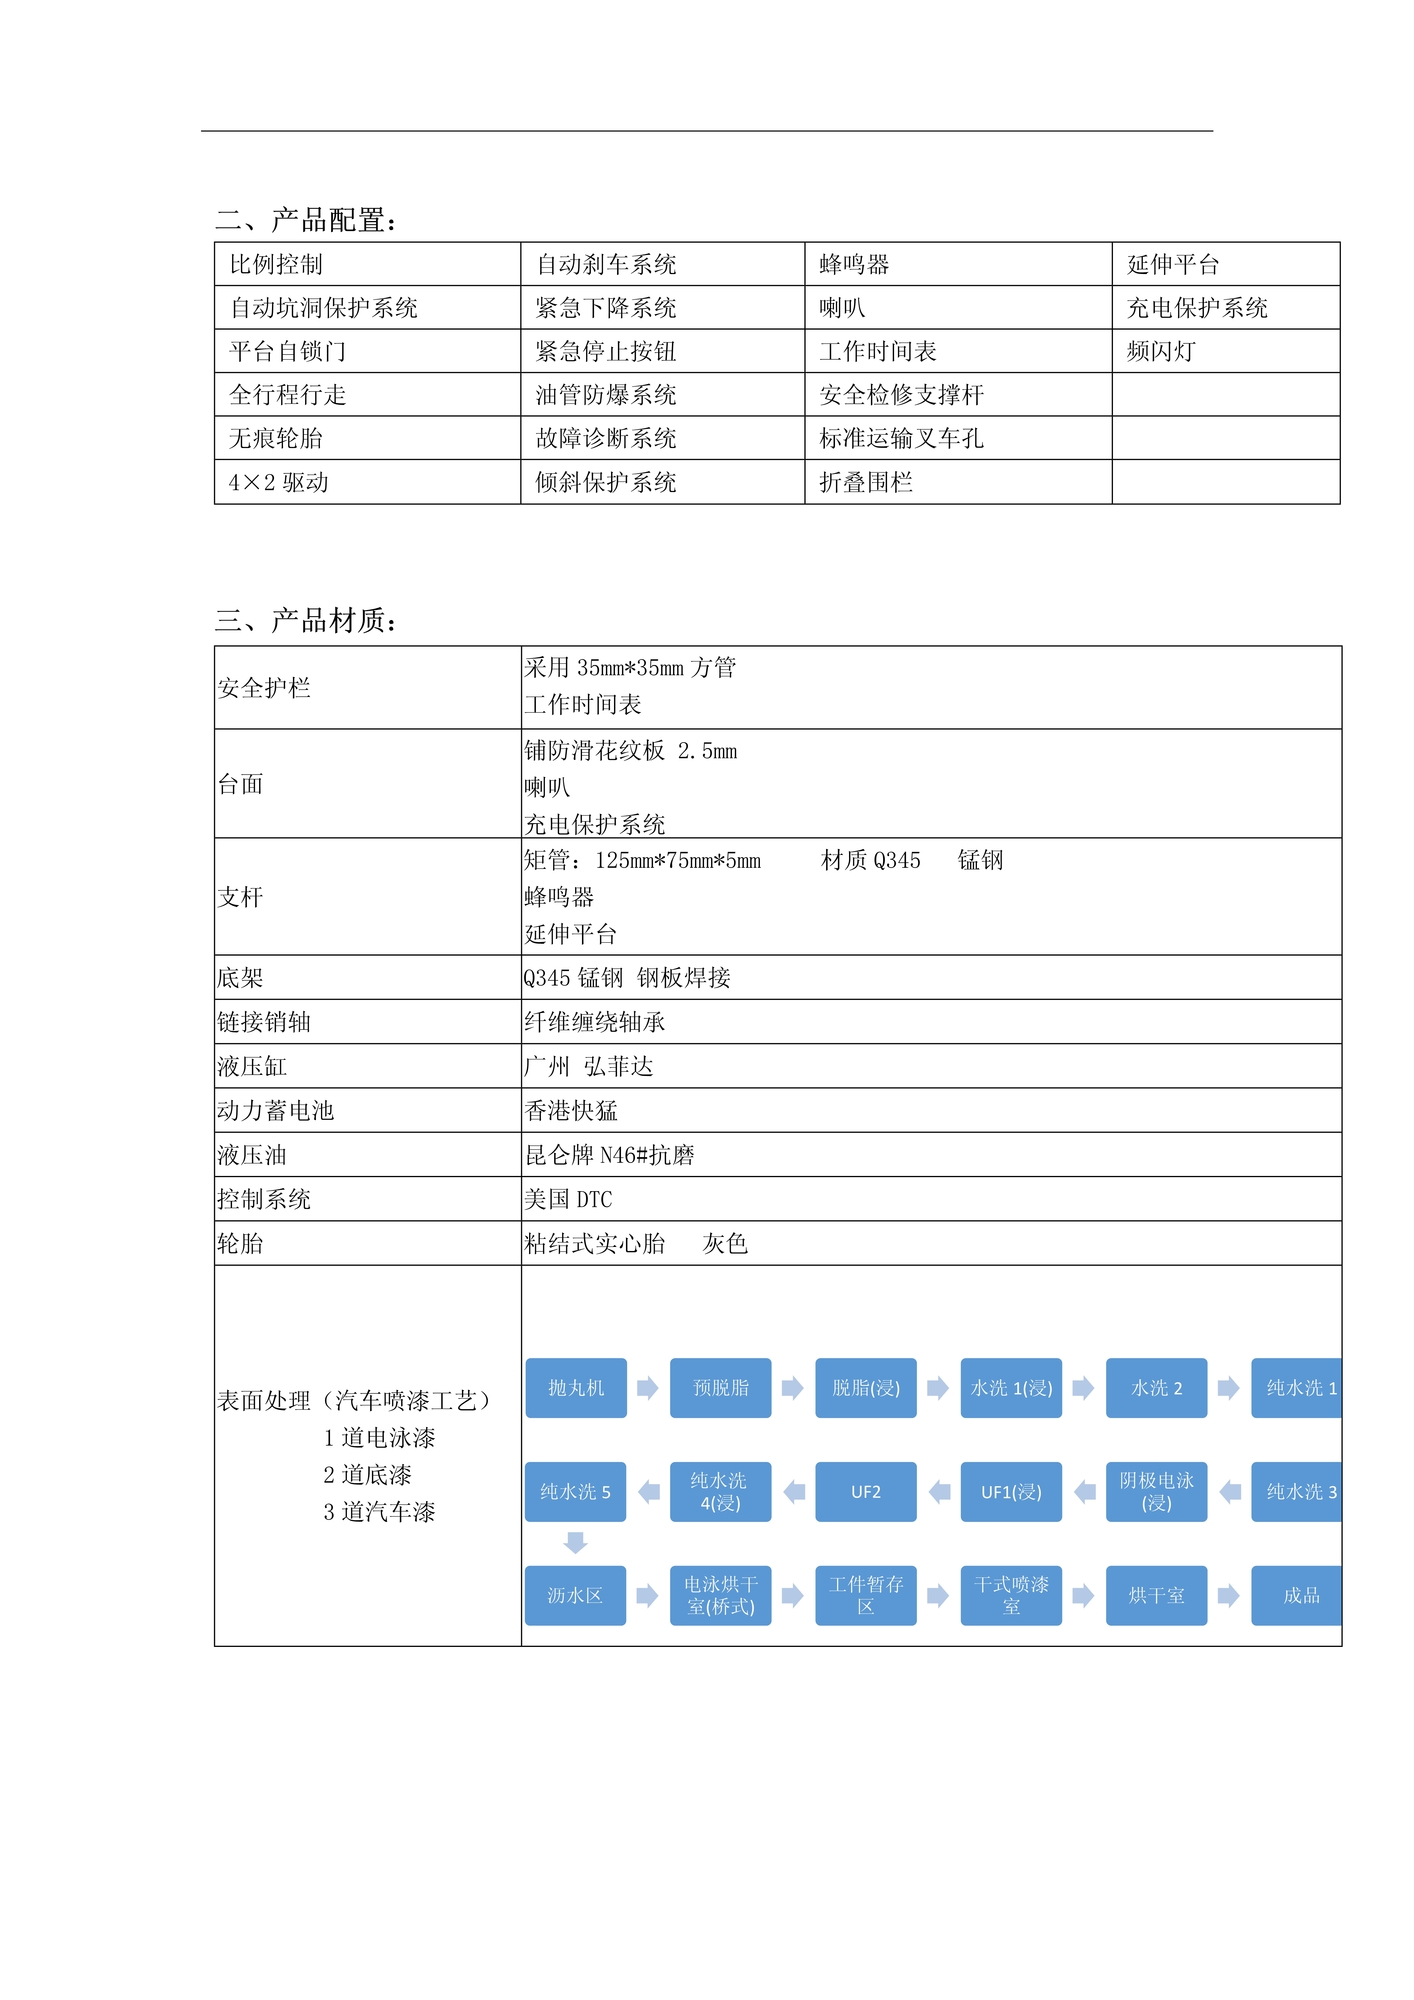 安徽合力股份有限公司配件分公司全自行式高空作业平台技术规格书(1)_2.jpg